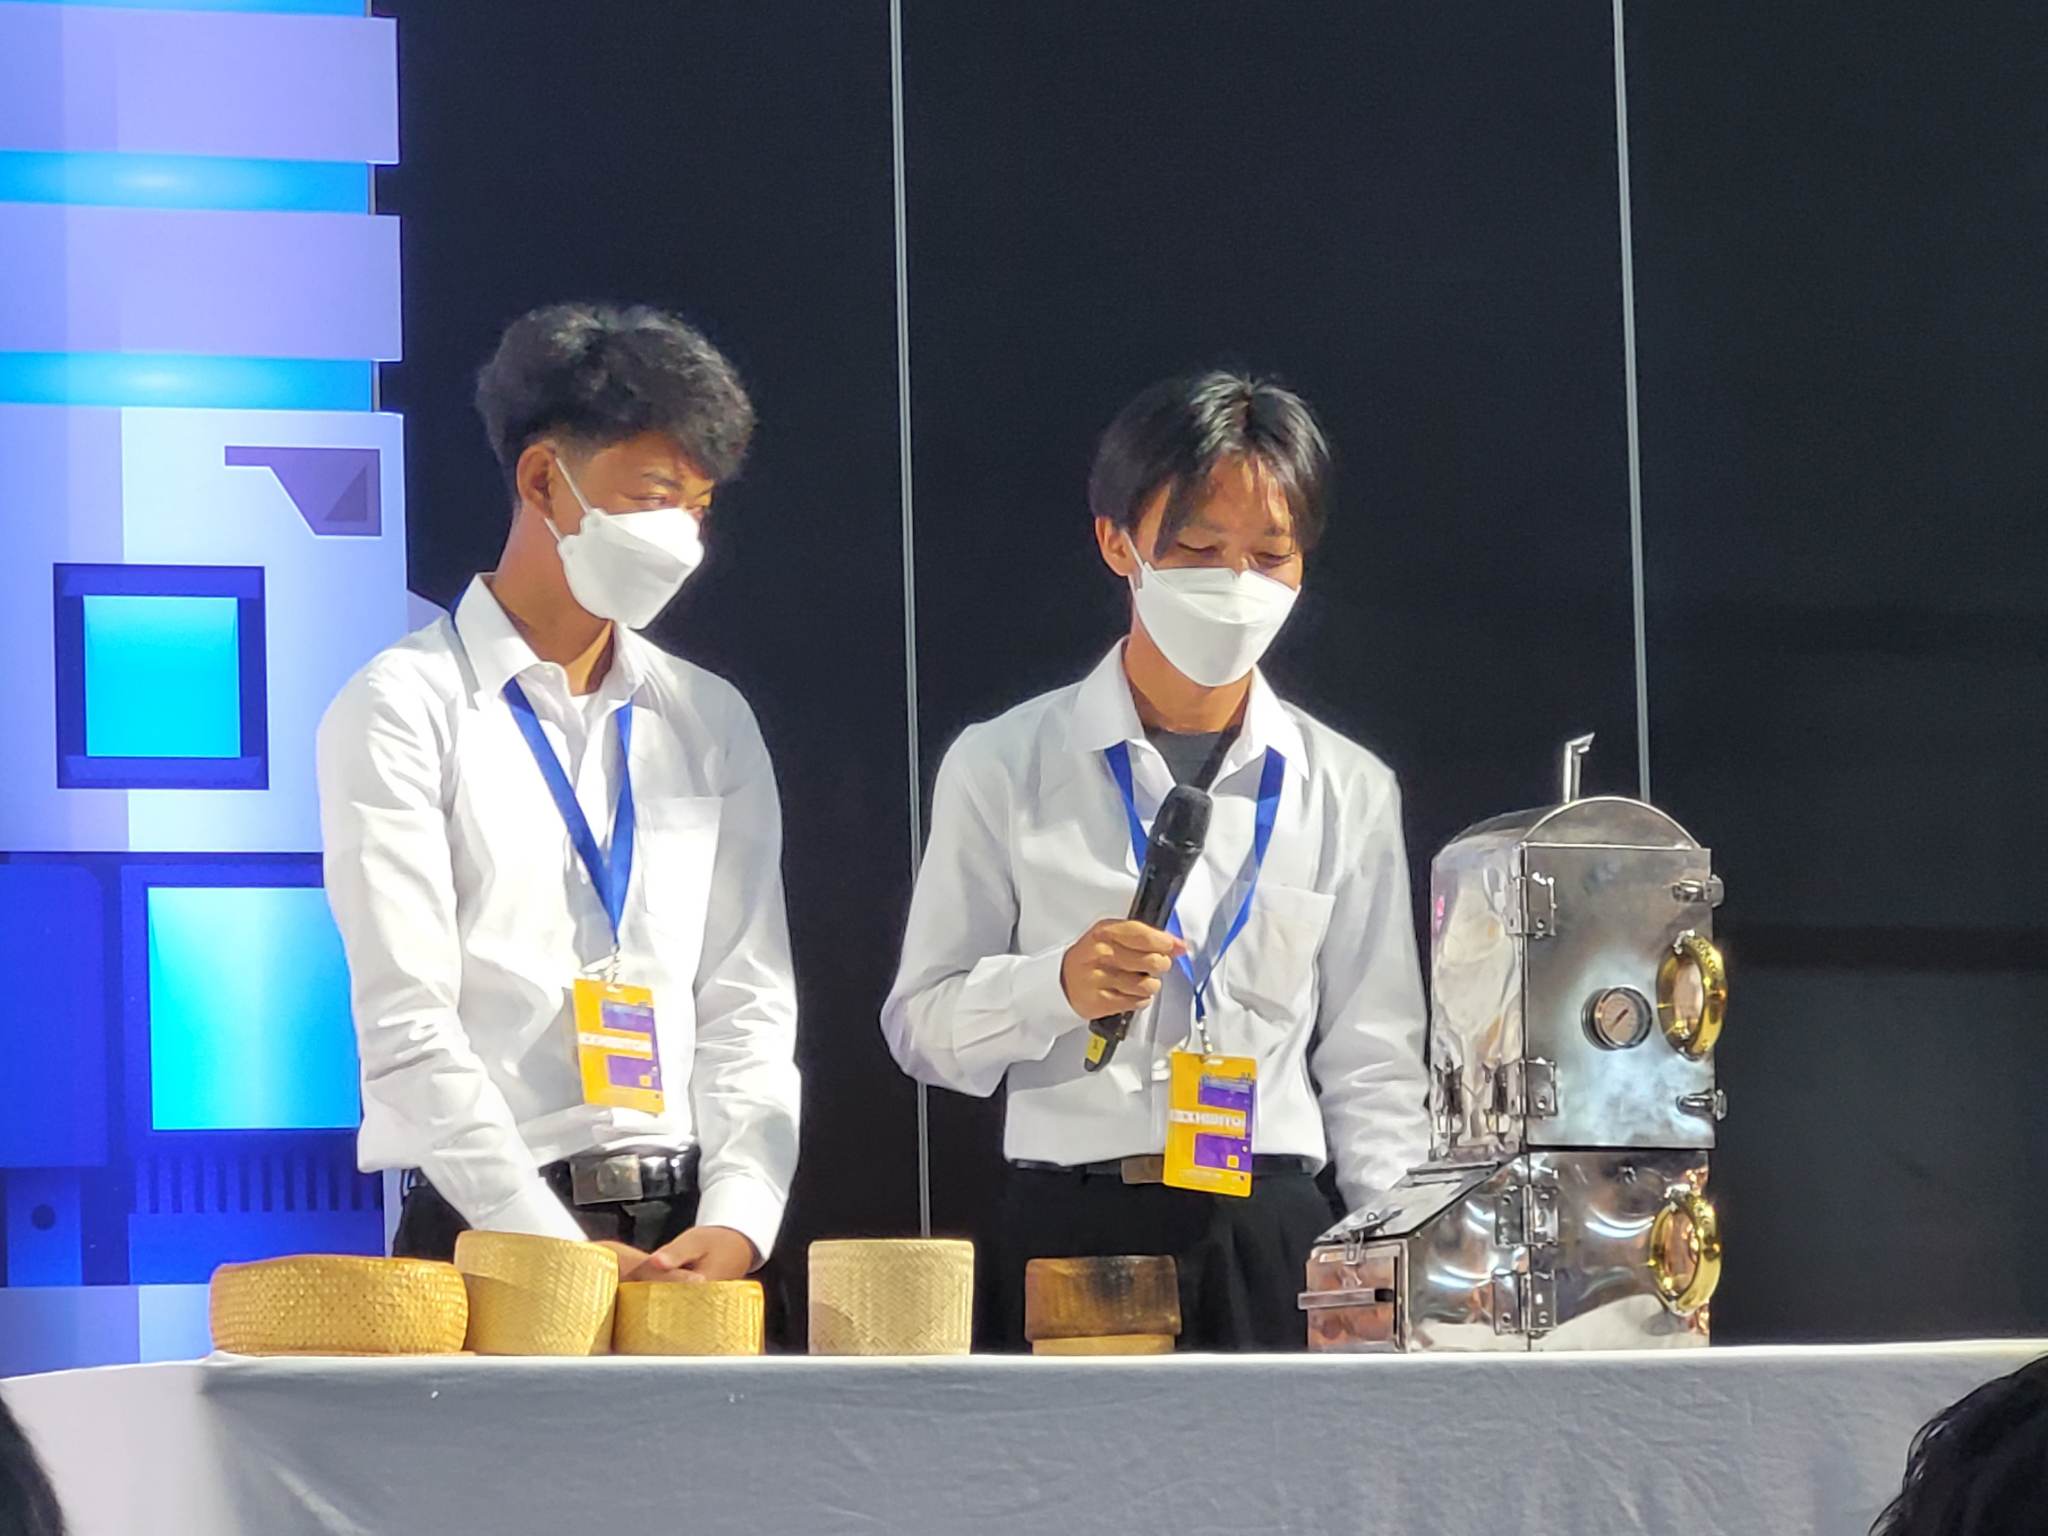 ม.นครพนม คว้ารางวัลระดับเหรียญเงิน 4 ผลงาน และรางวัล Popular Vote 2 ผลงาน จากการแข่งขันโครงการ Thailand New Gen Inventors Award 2023